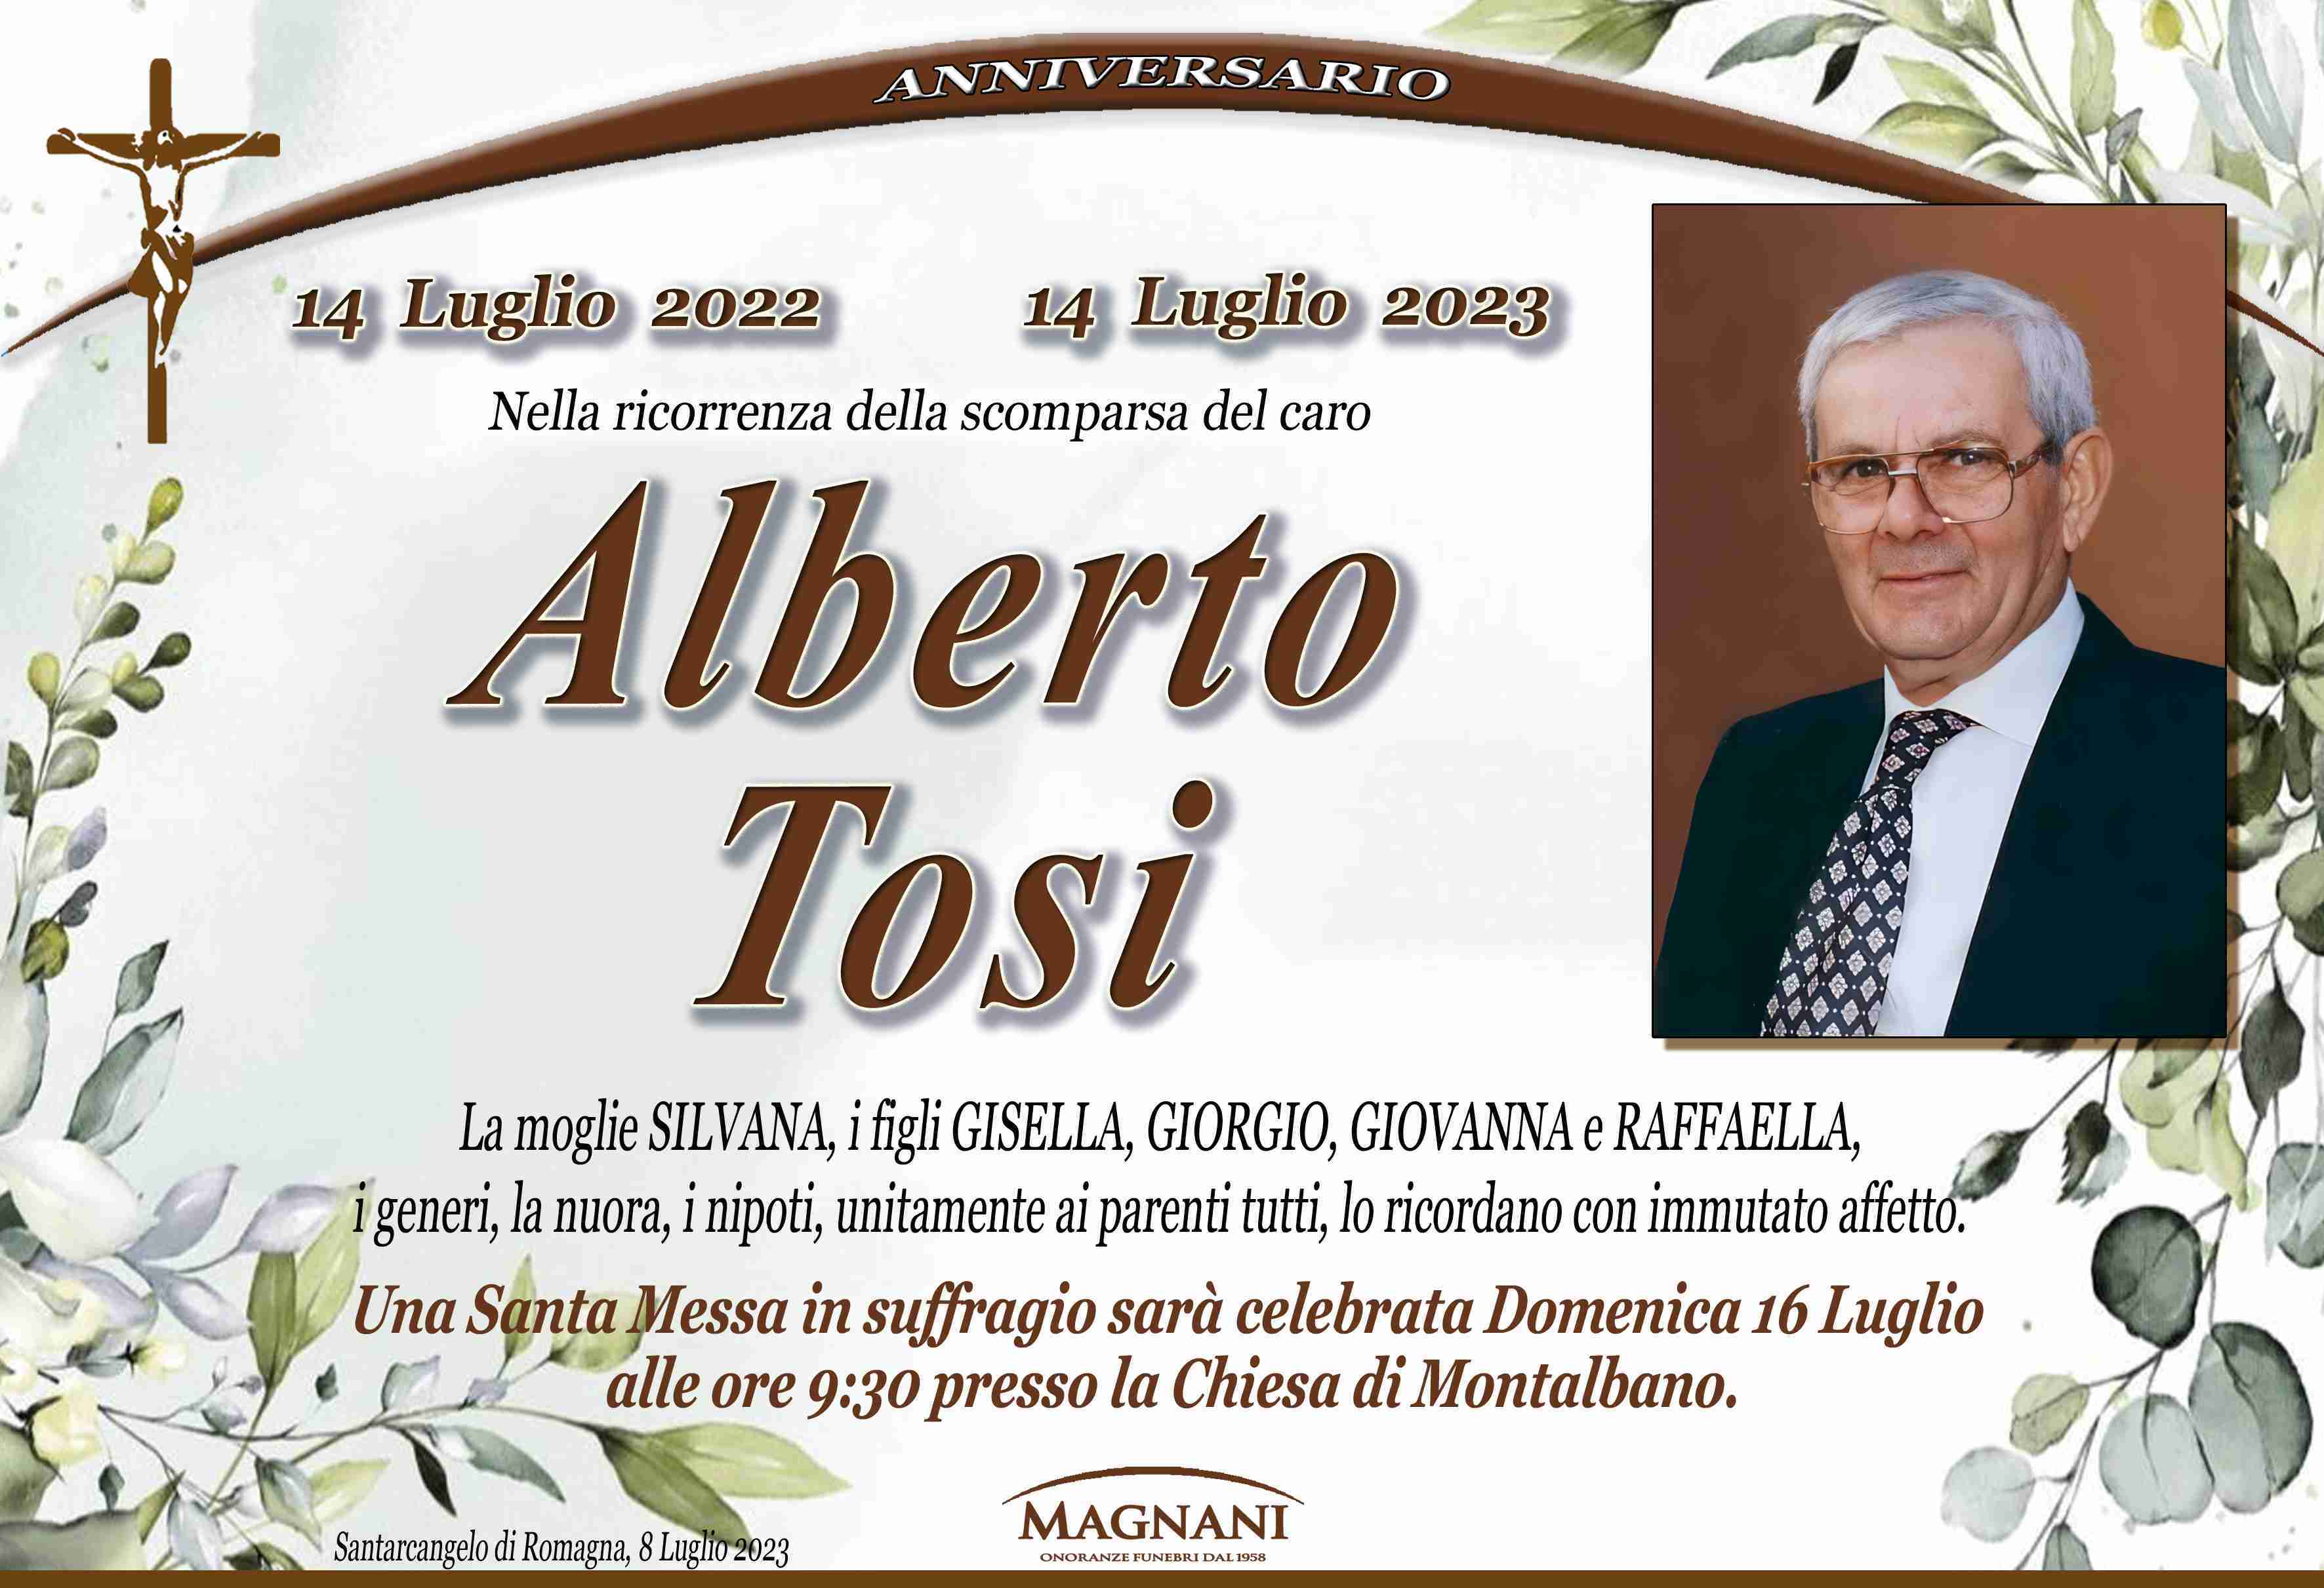 Alberto Tosi